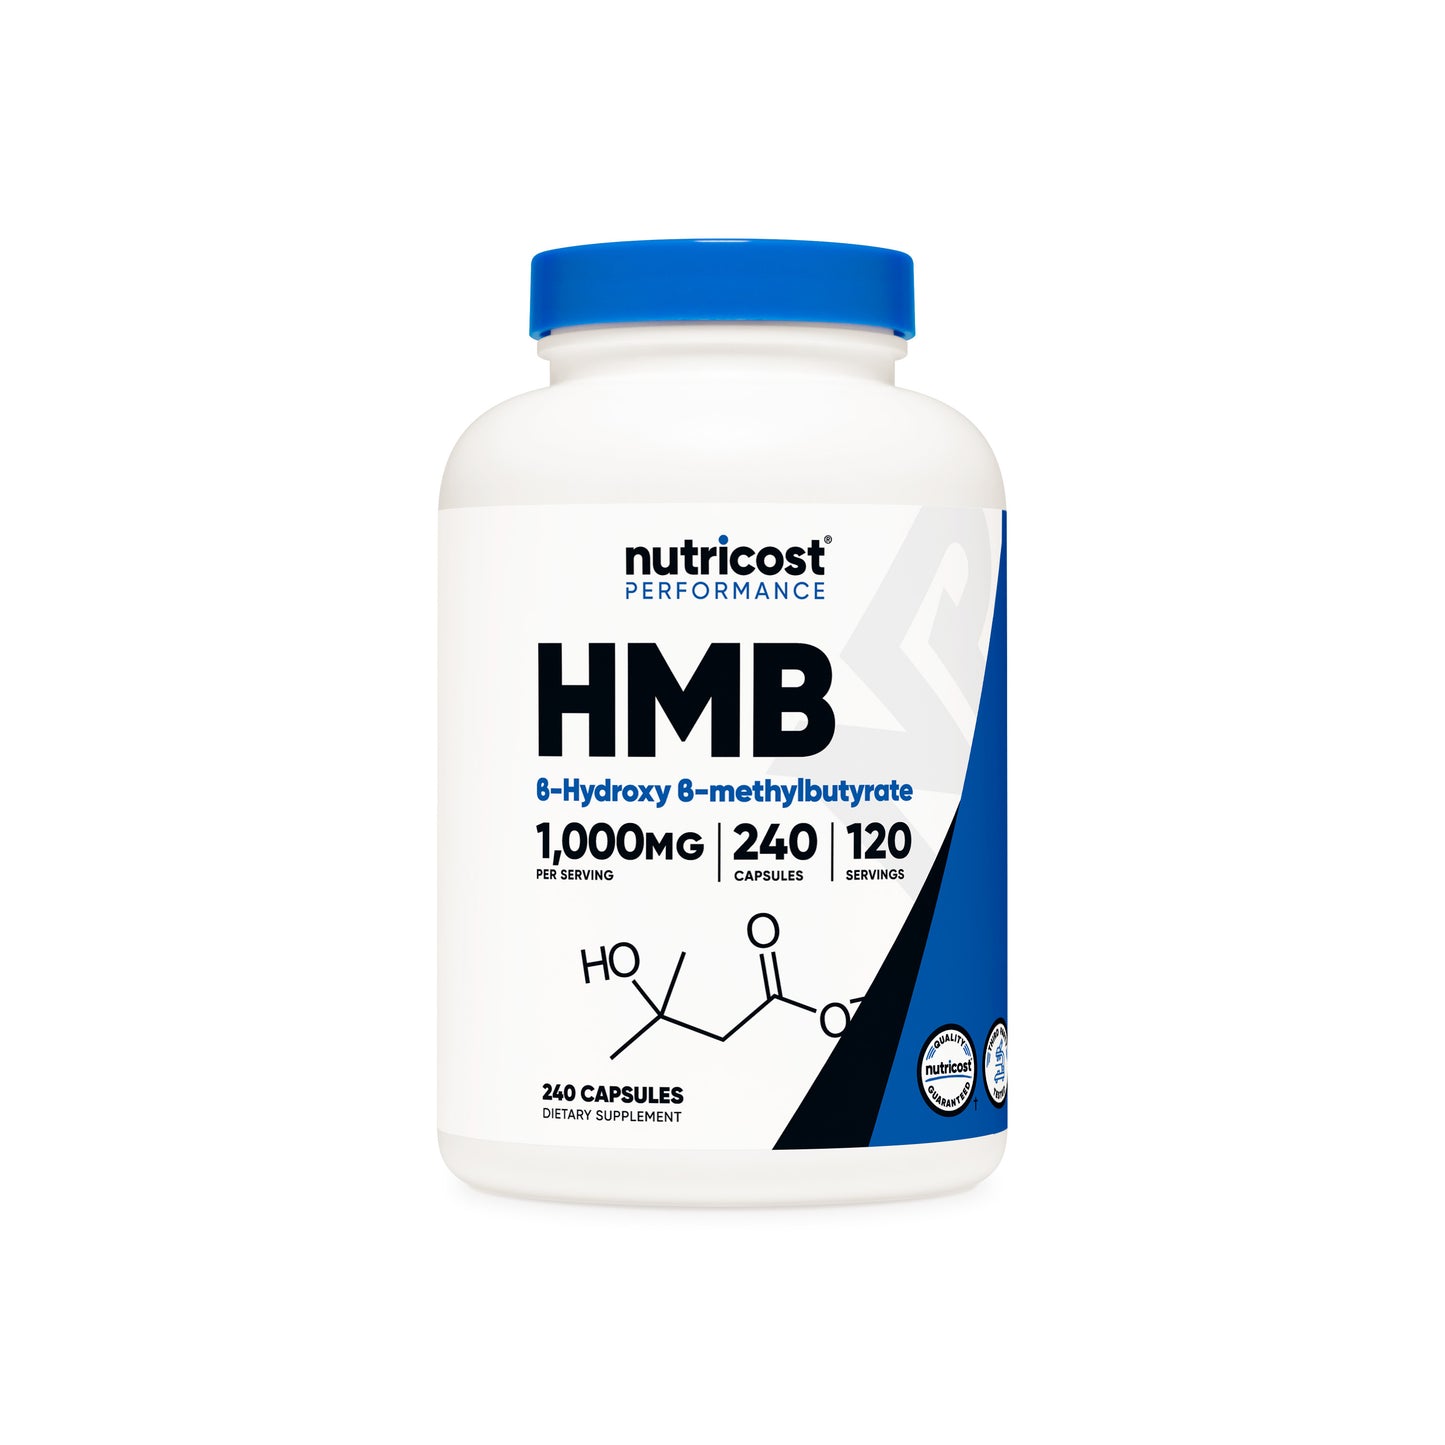 Nutricost HMB Capsules